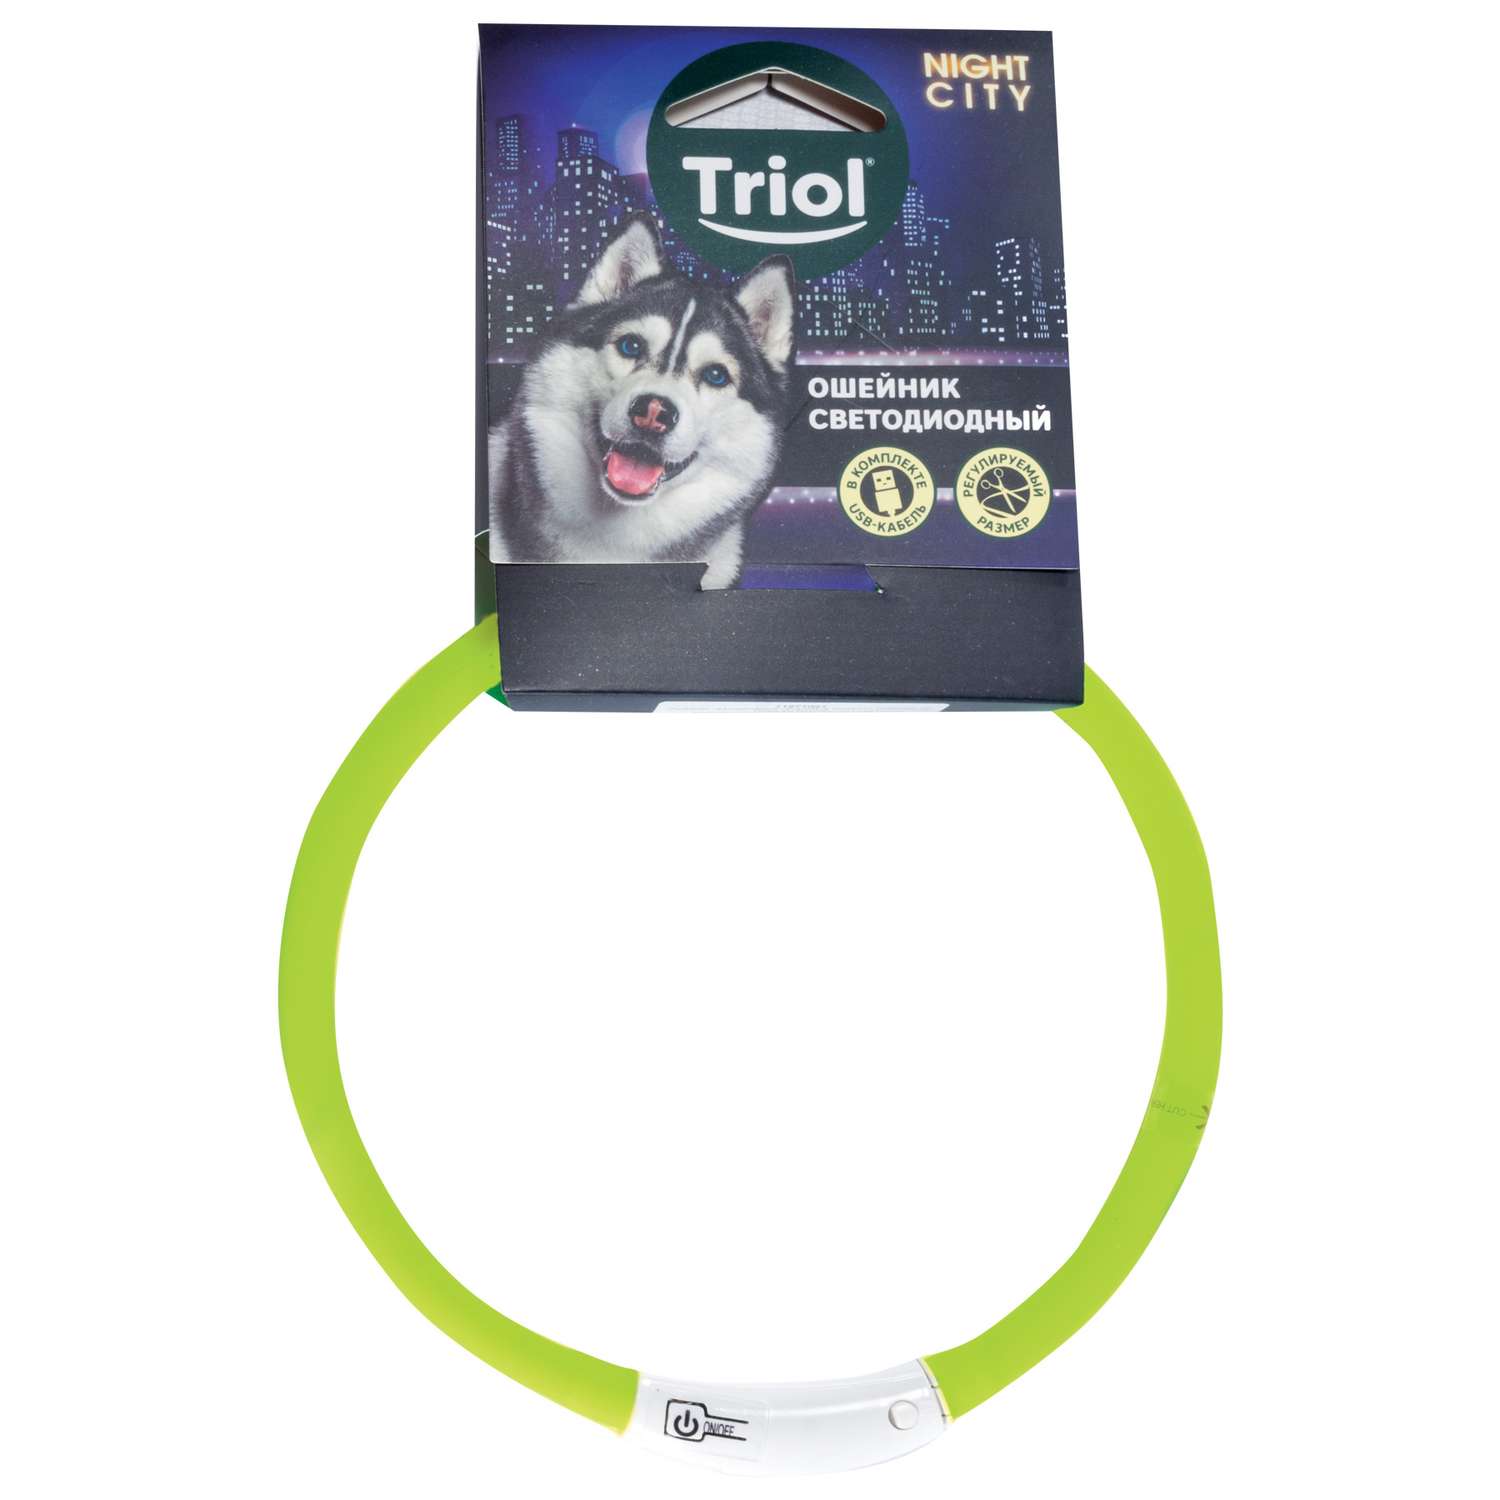 Ошейник для собак Triol Nigt City шнурок светодиодный S Салатовый - фото 2